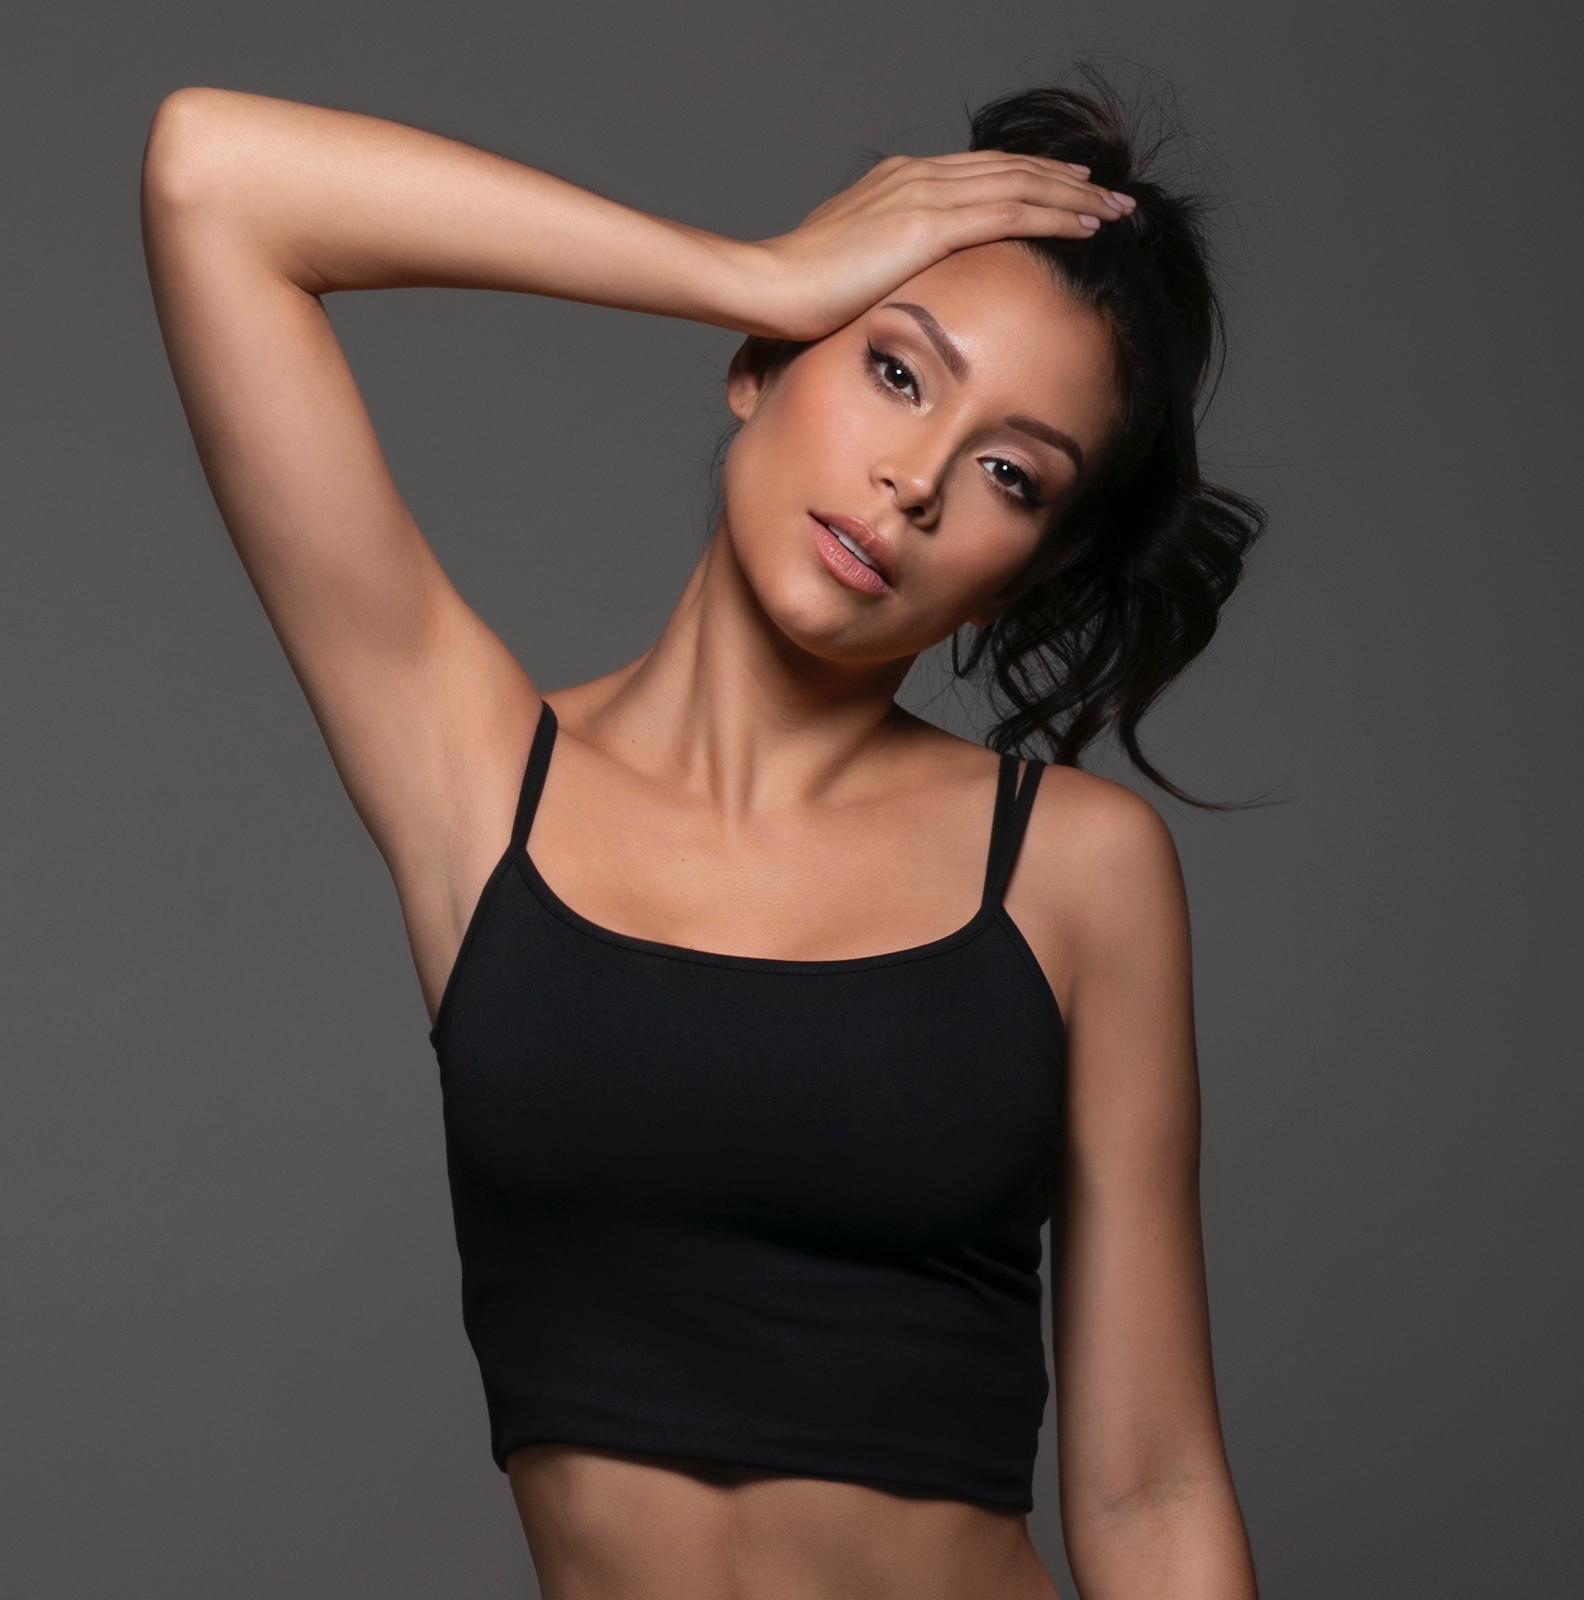 Modelo venezolana Ana Cáceres - ACN